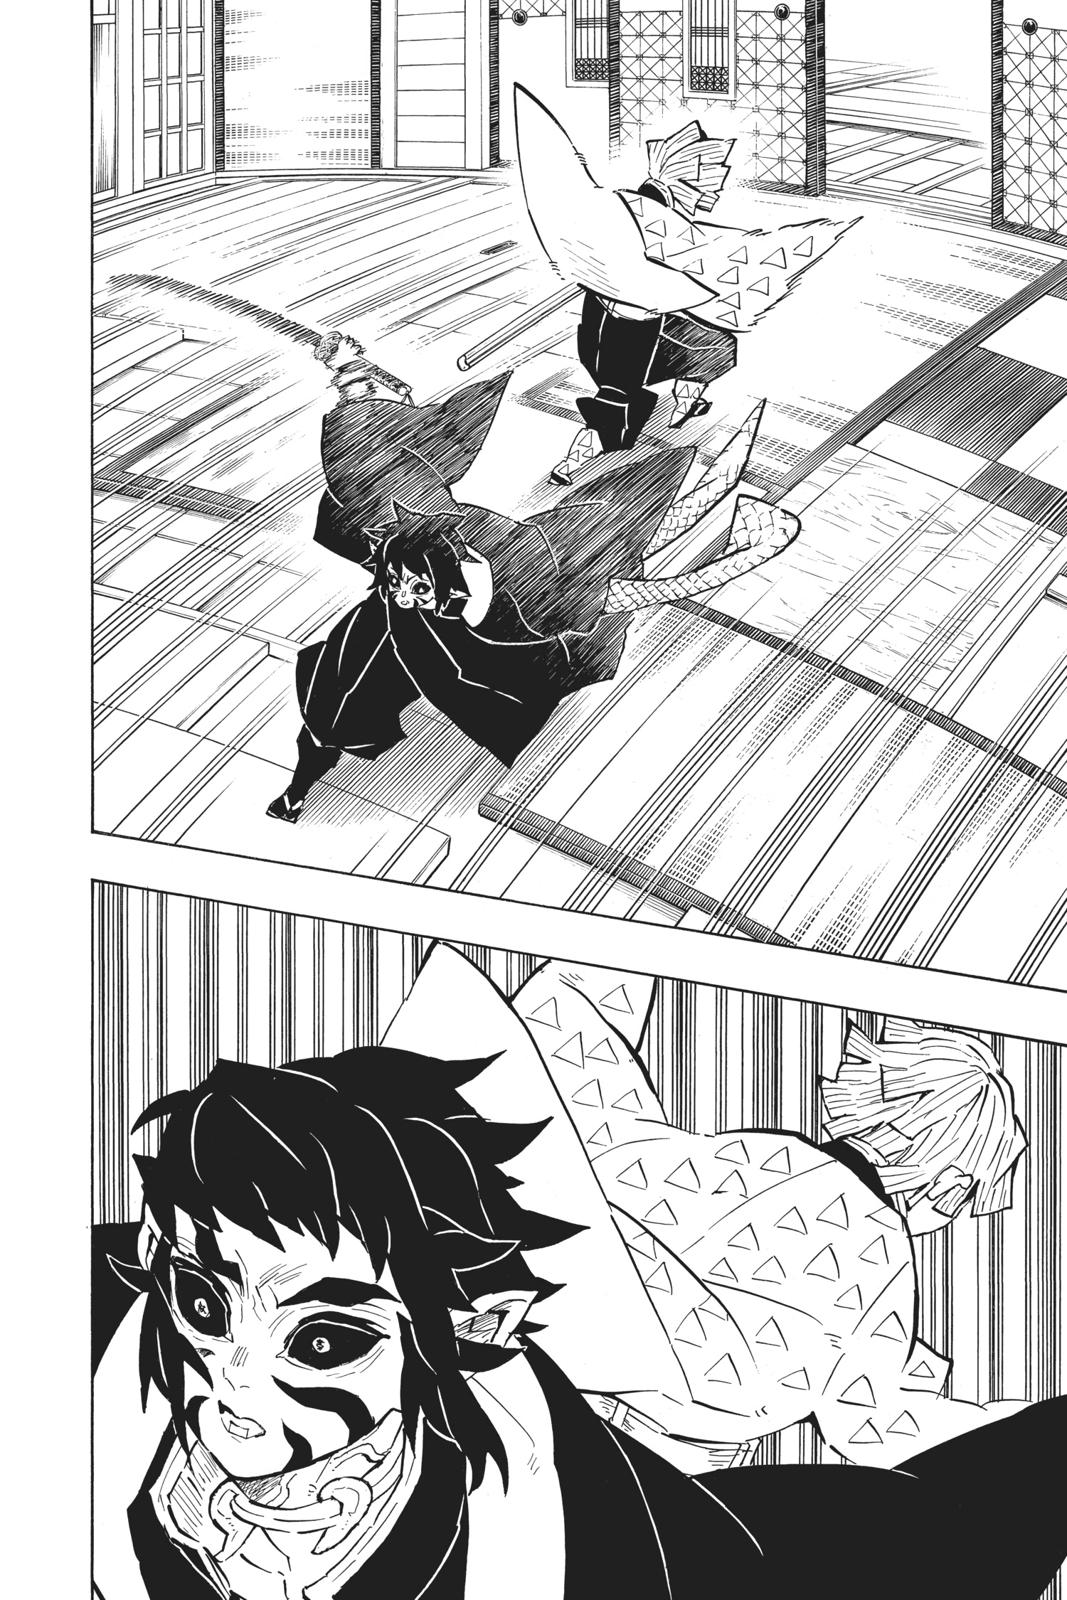 Demon Slayer Manga Manga Chapter - 144 - image 4